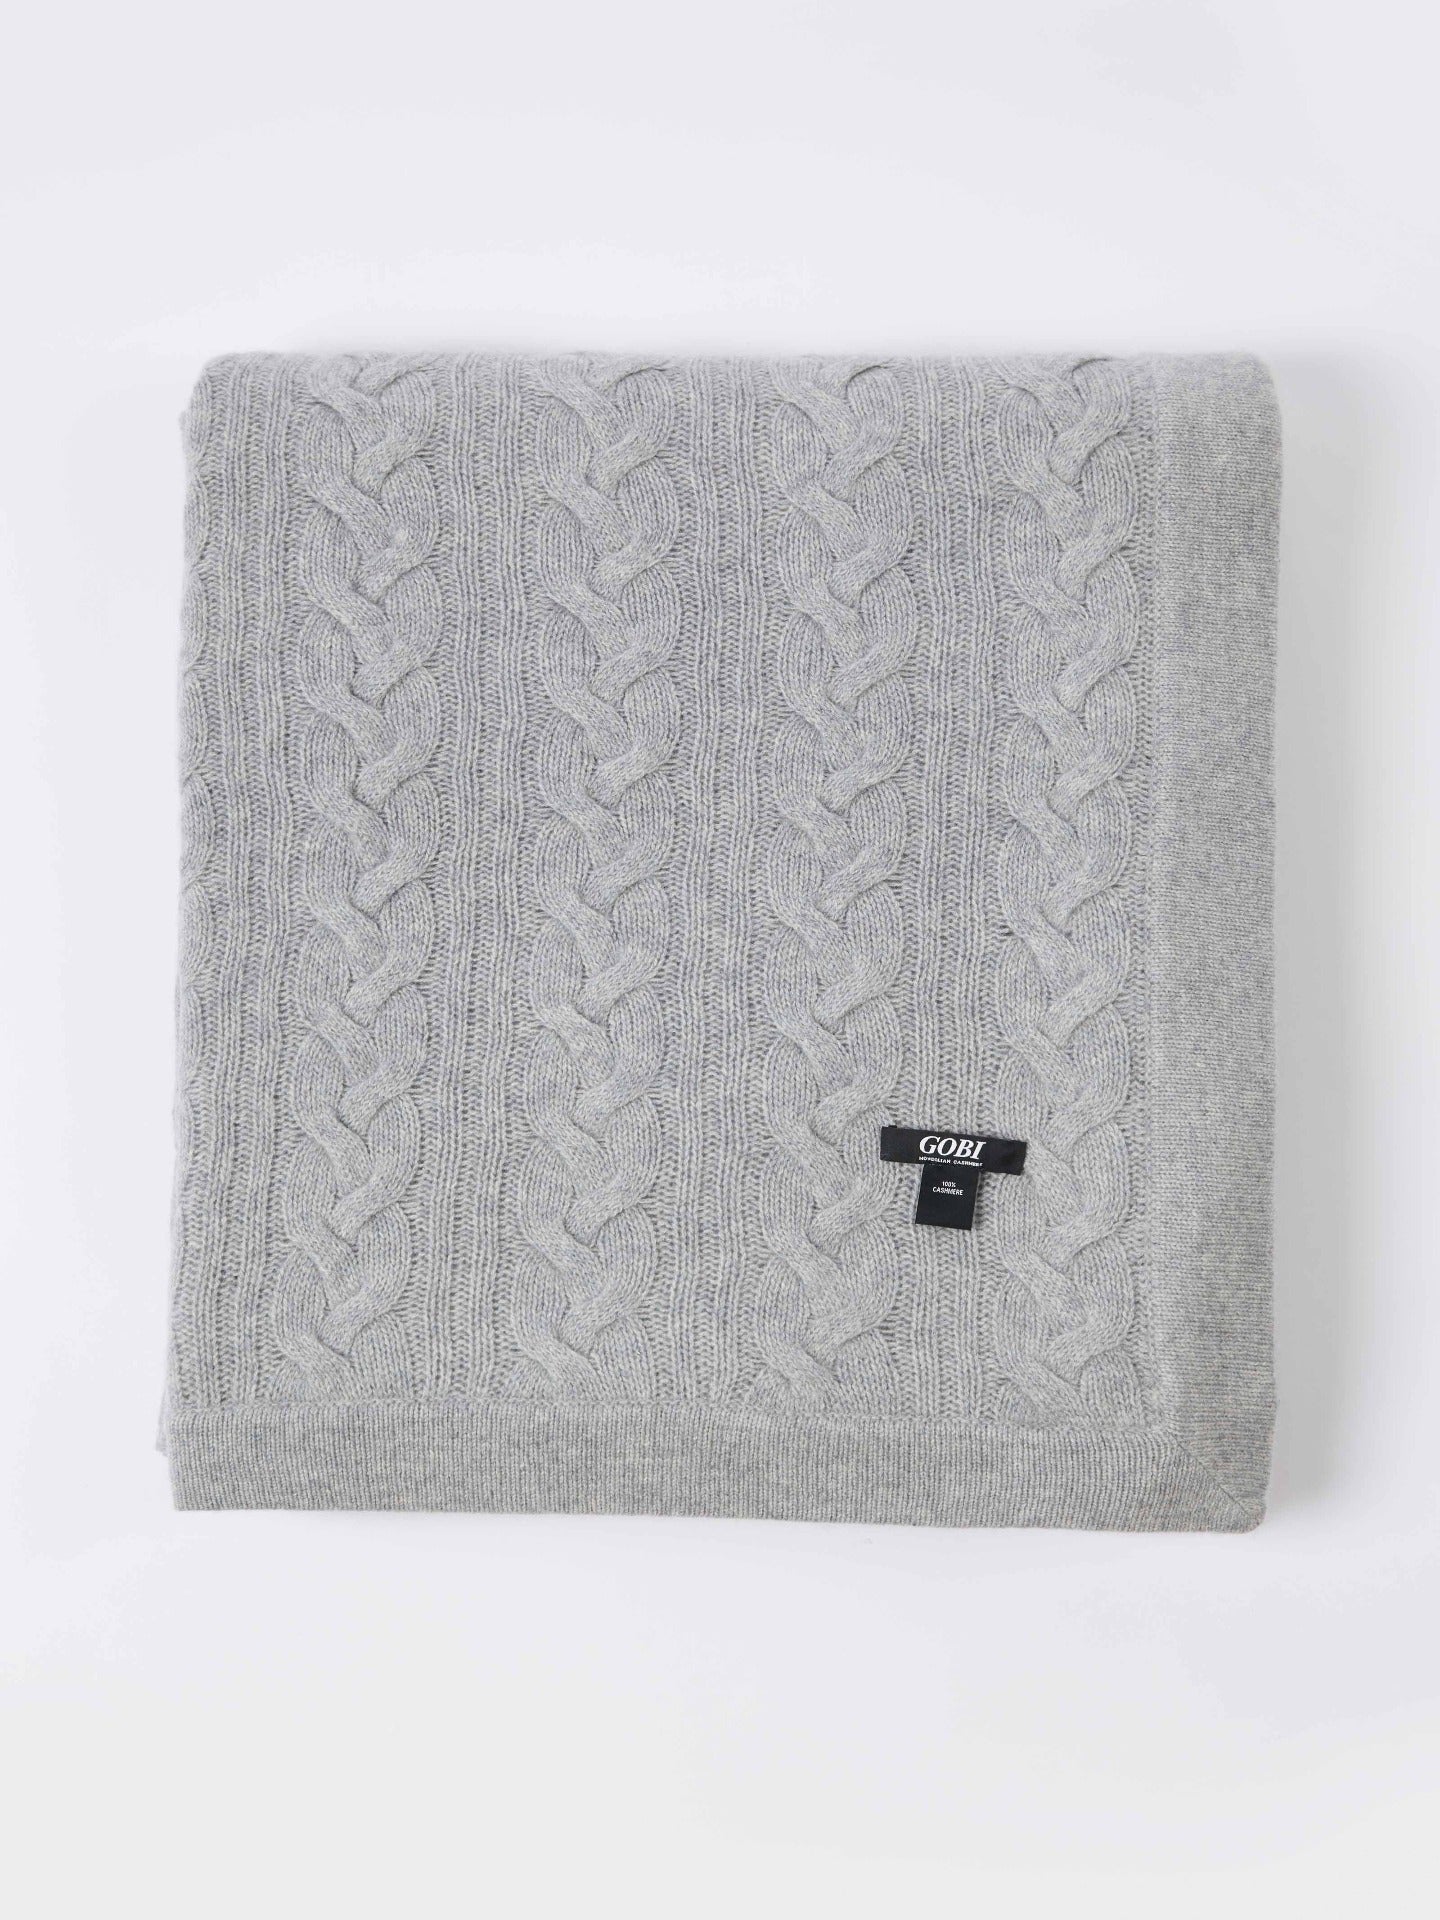 Unisex Cashmere Cable Knit Blanket Vapor Blue - Gobi Cashmere